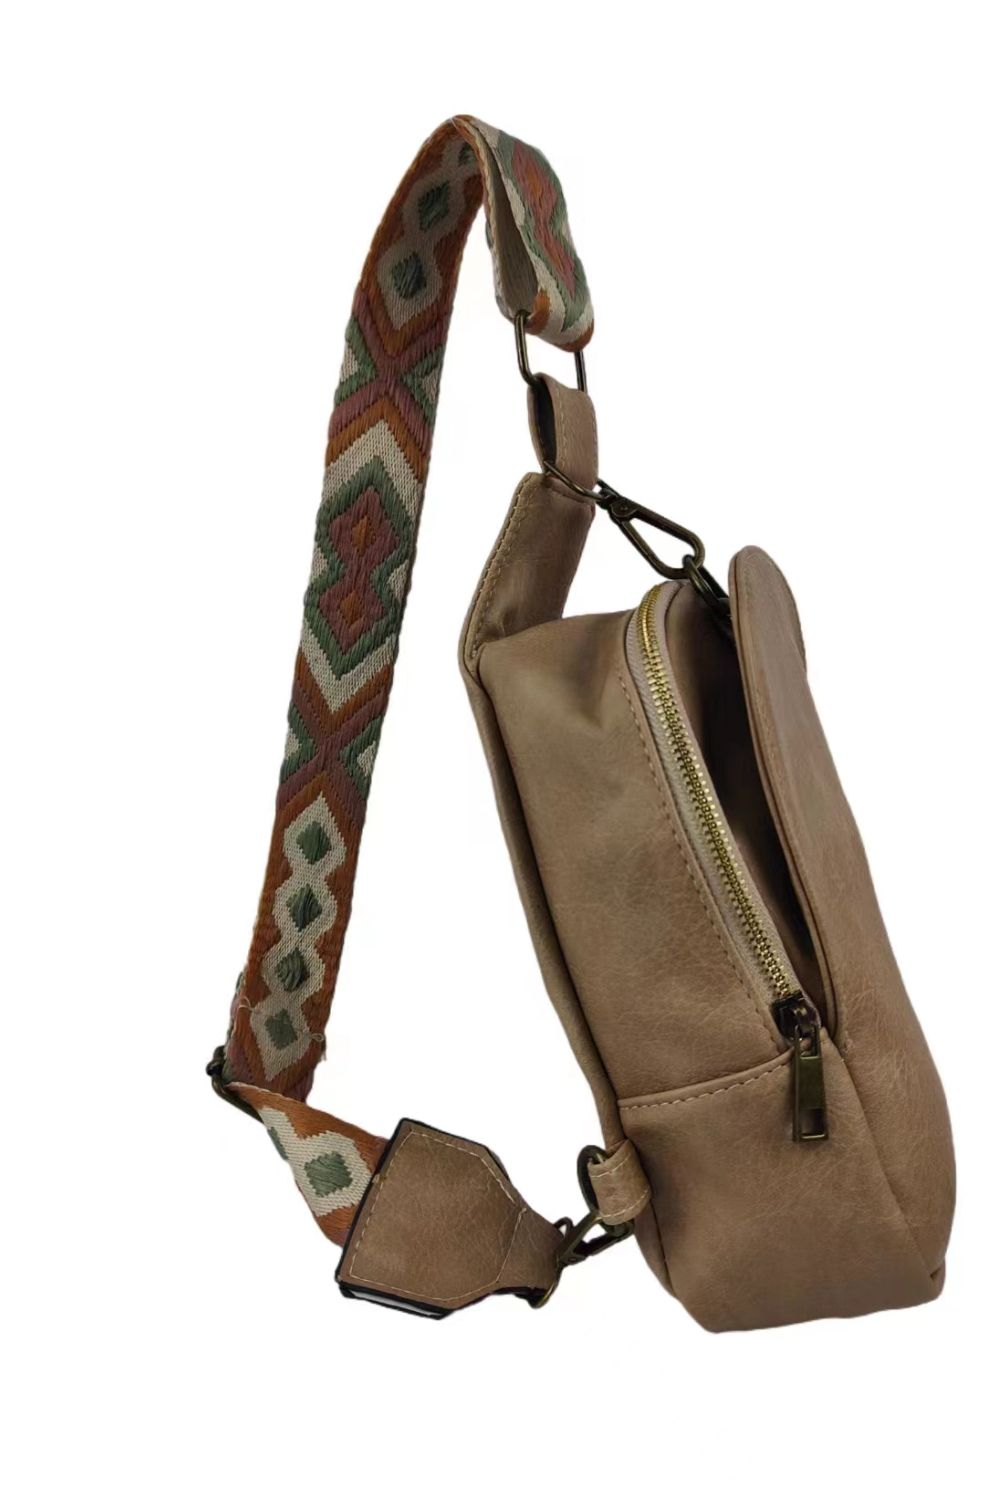 - Adjustable Strap PU Leather Sling Bag - handbag at TFC&H Co.